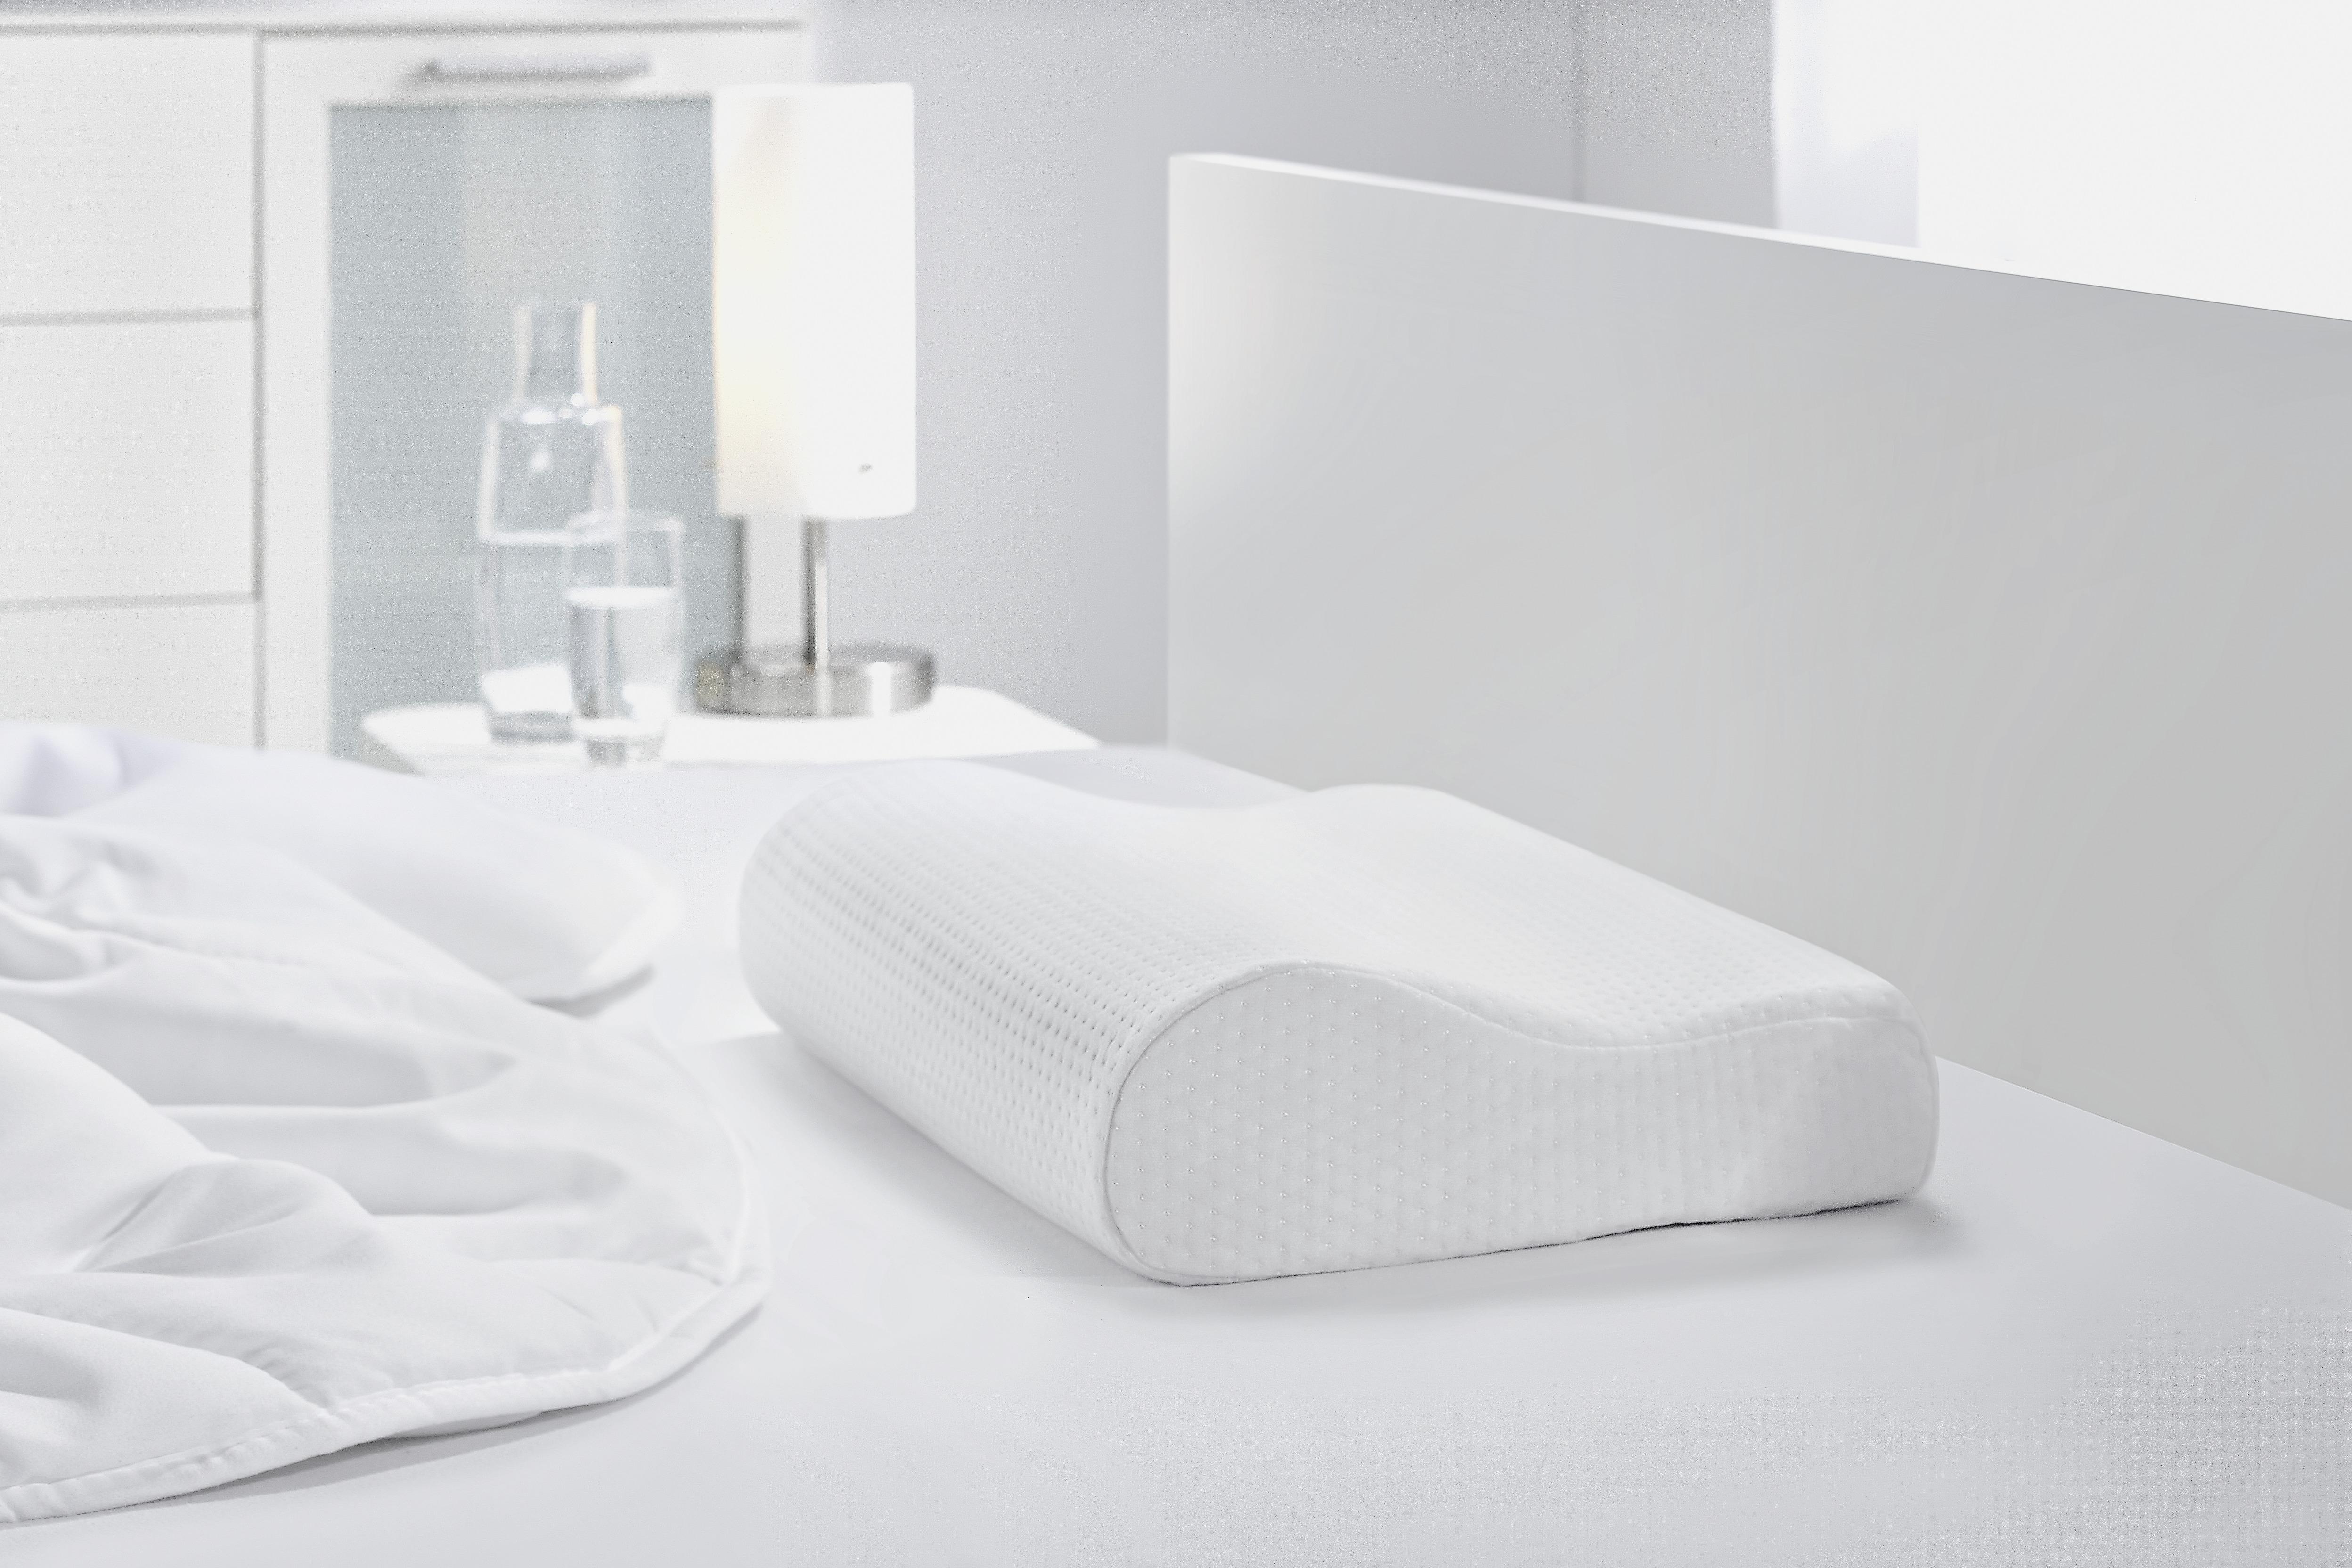 Nackenkissen Visco Comfort ca. 30x48x11cm - Weiß, Textil (30/48/11cm) - Modern Living